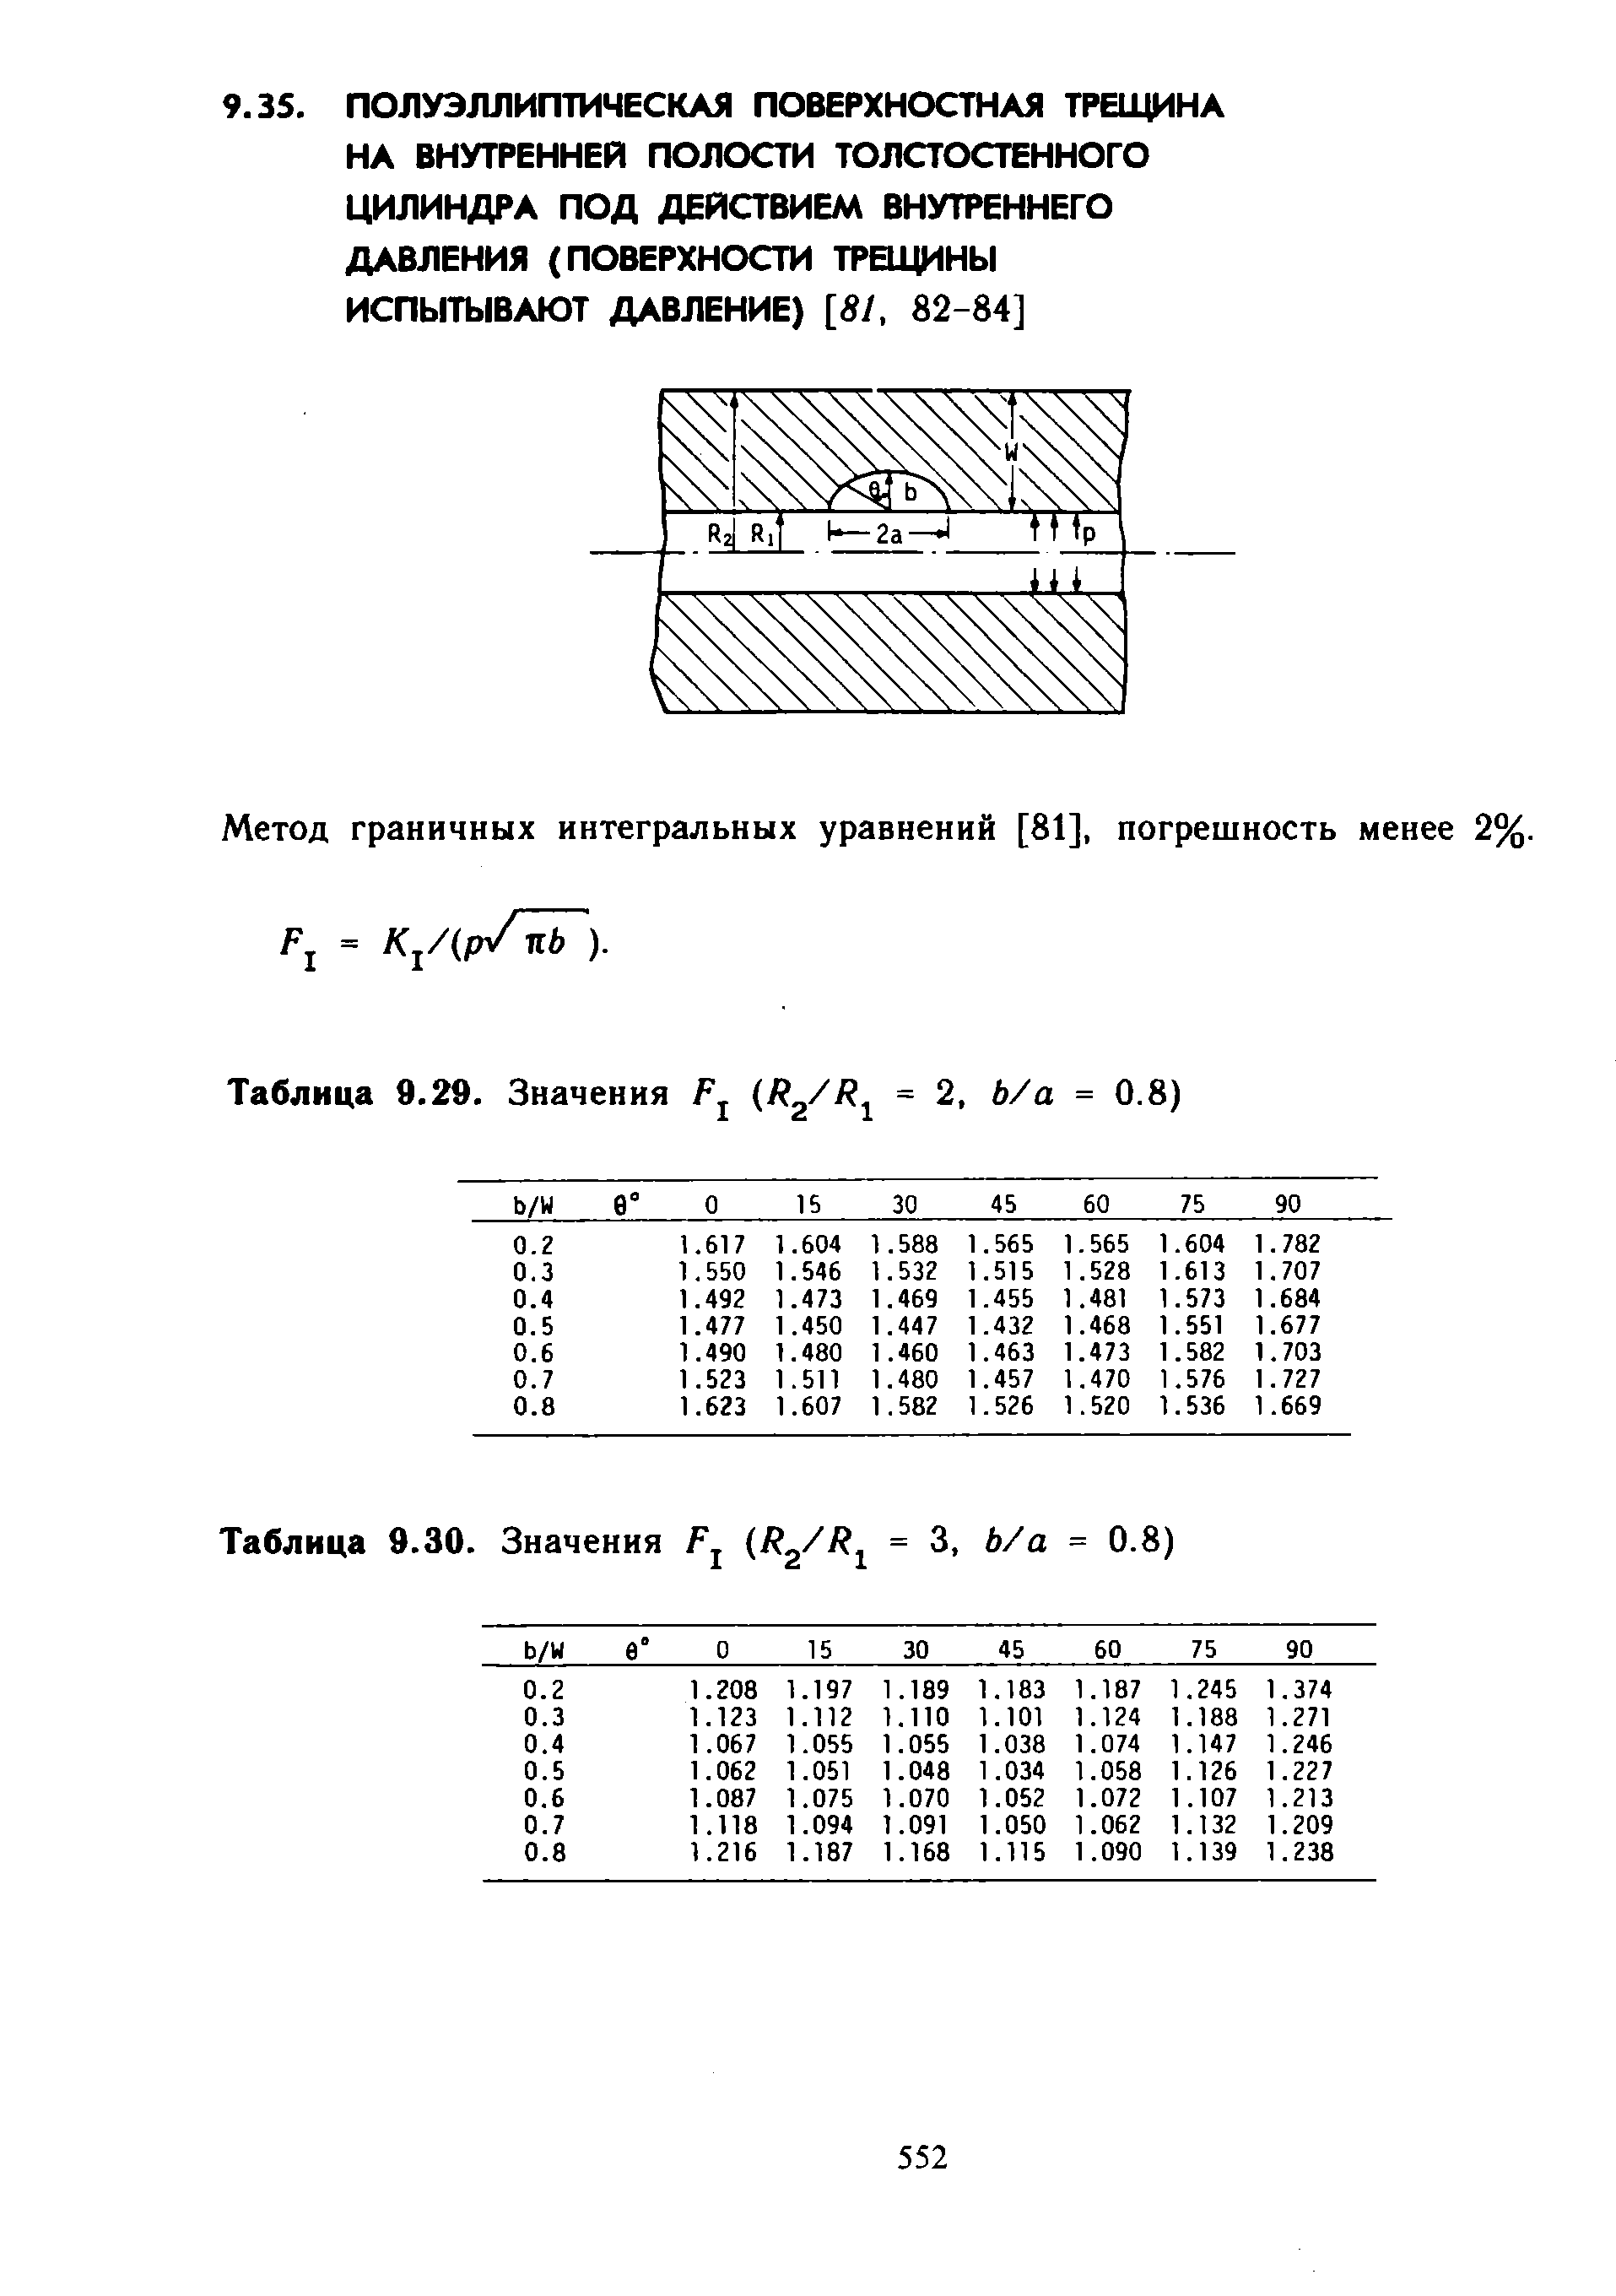 Метод граничных интегральных уравнений [81], погрешность менее 2%.
